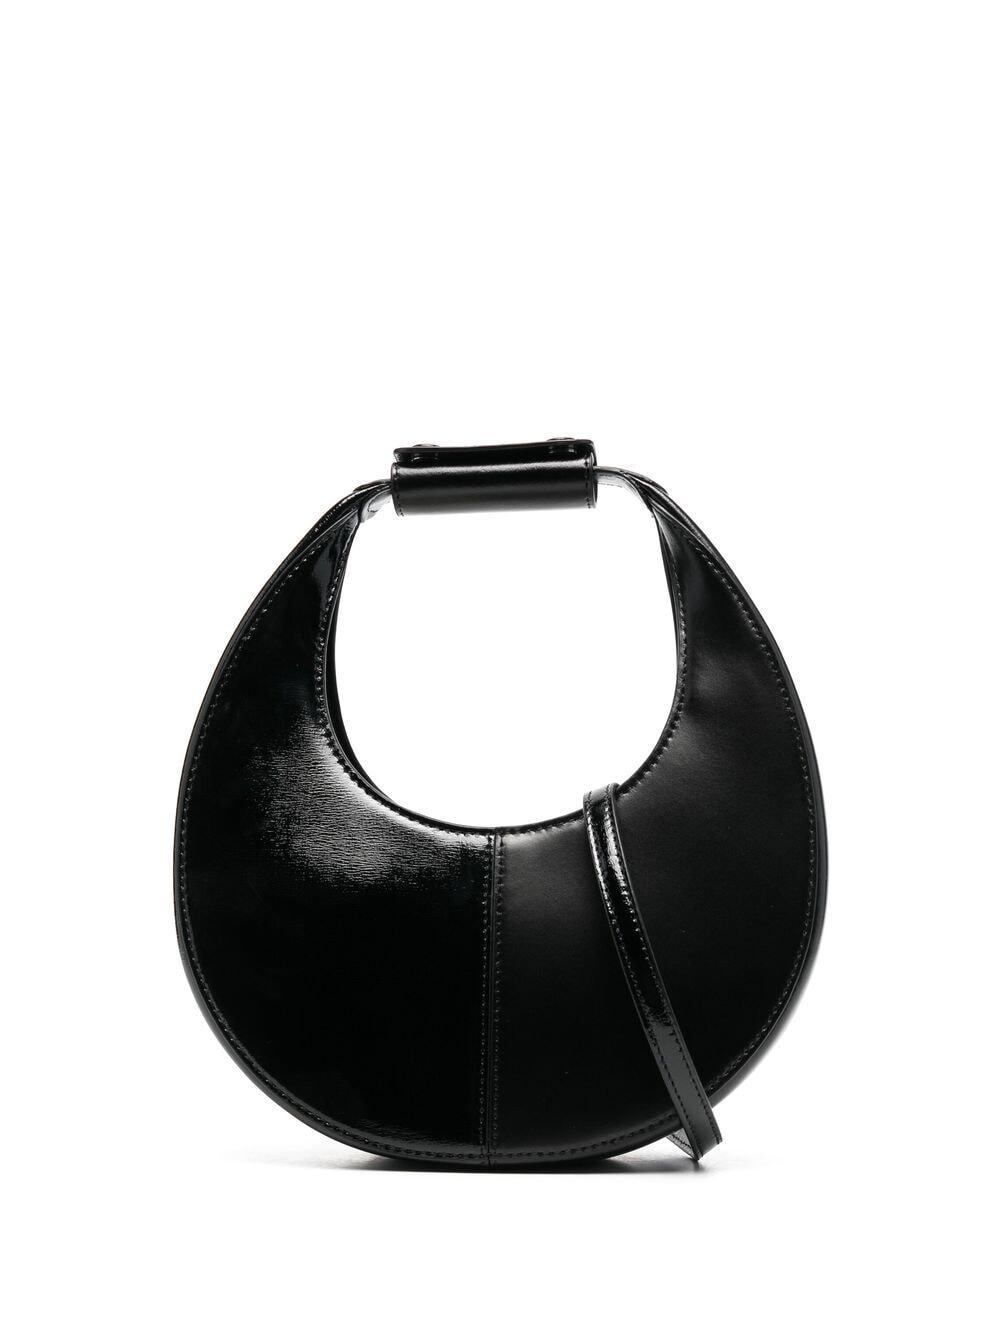 STAUD leather embossed-logo bag - Black